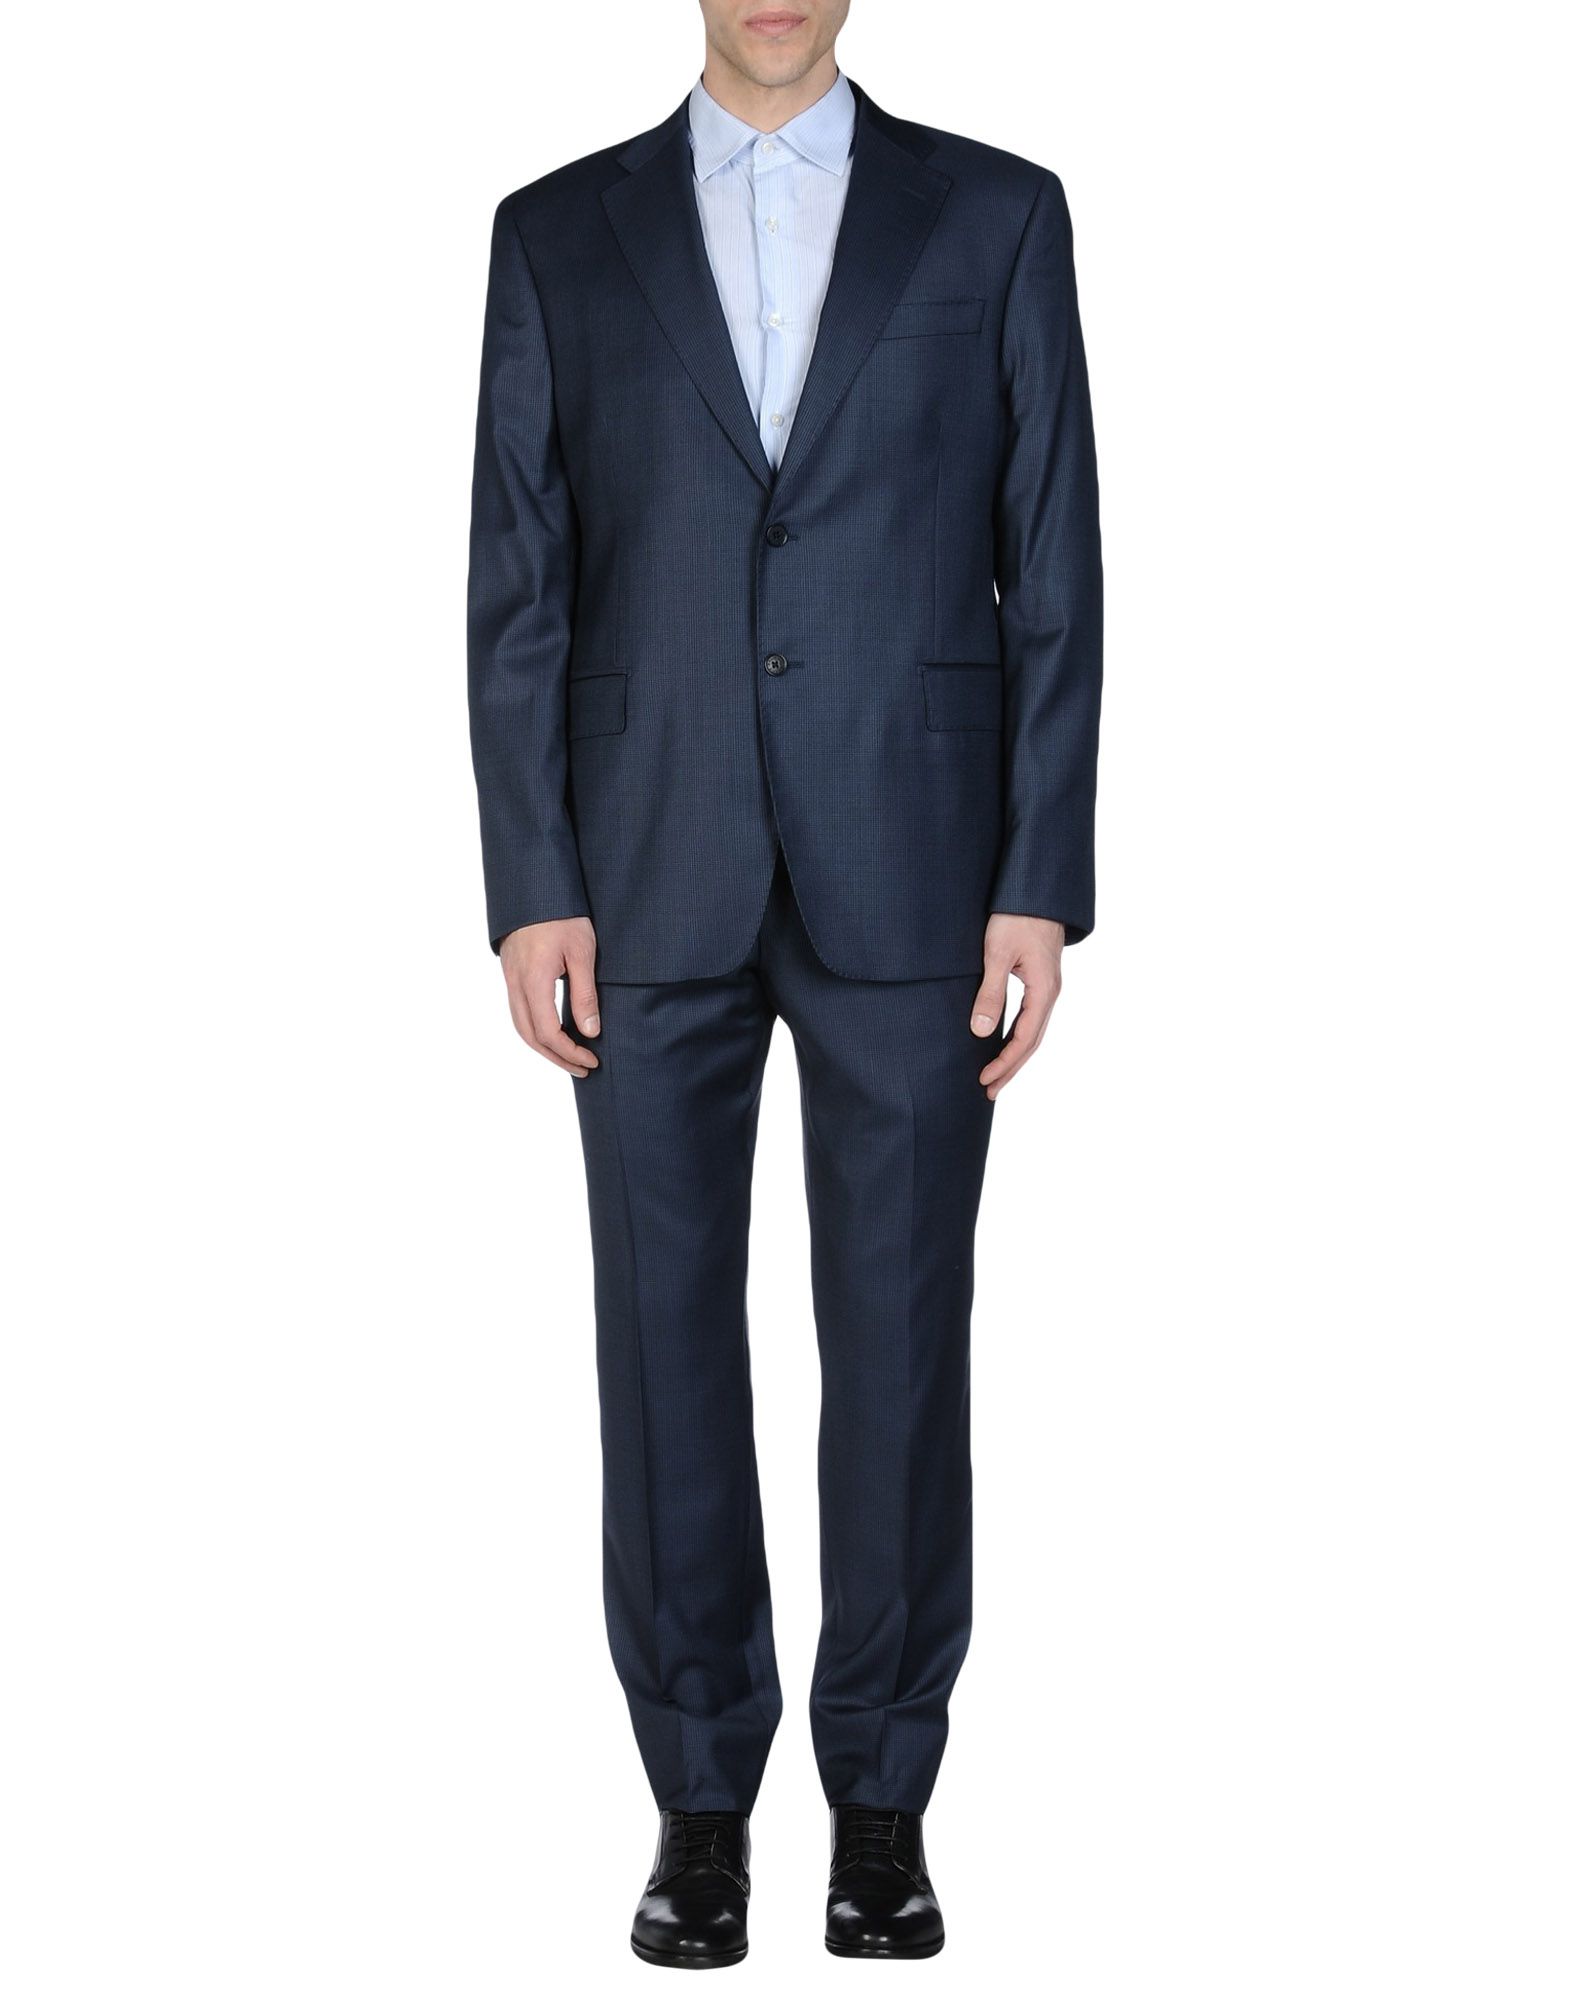 PIERRE BALMAIN Suits,49195523AS 5